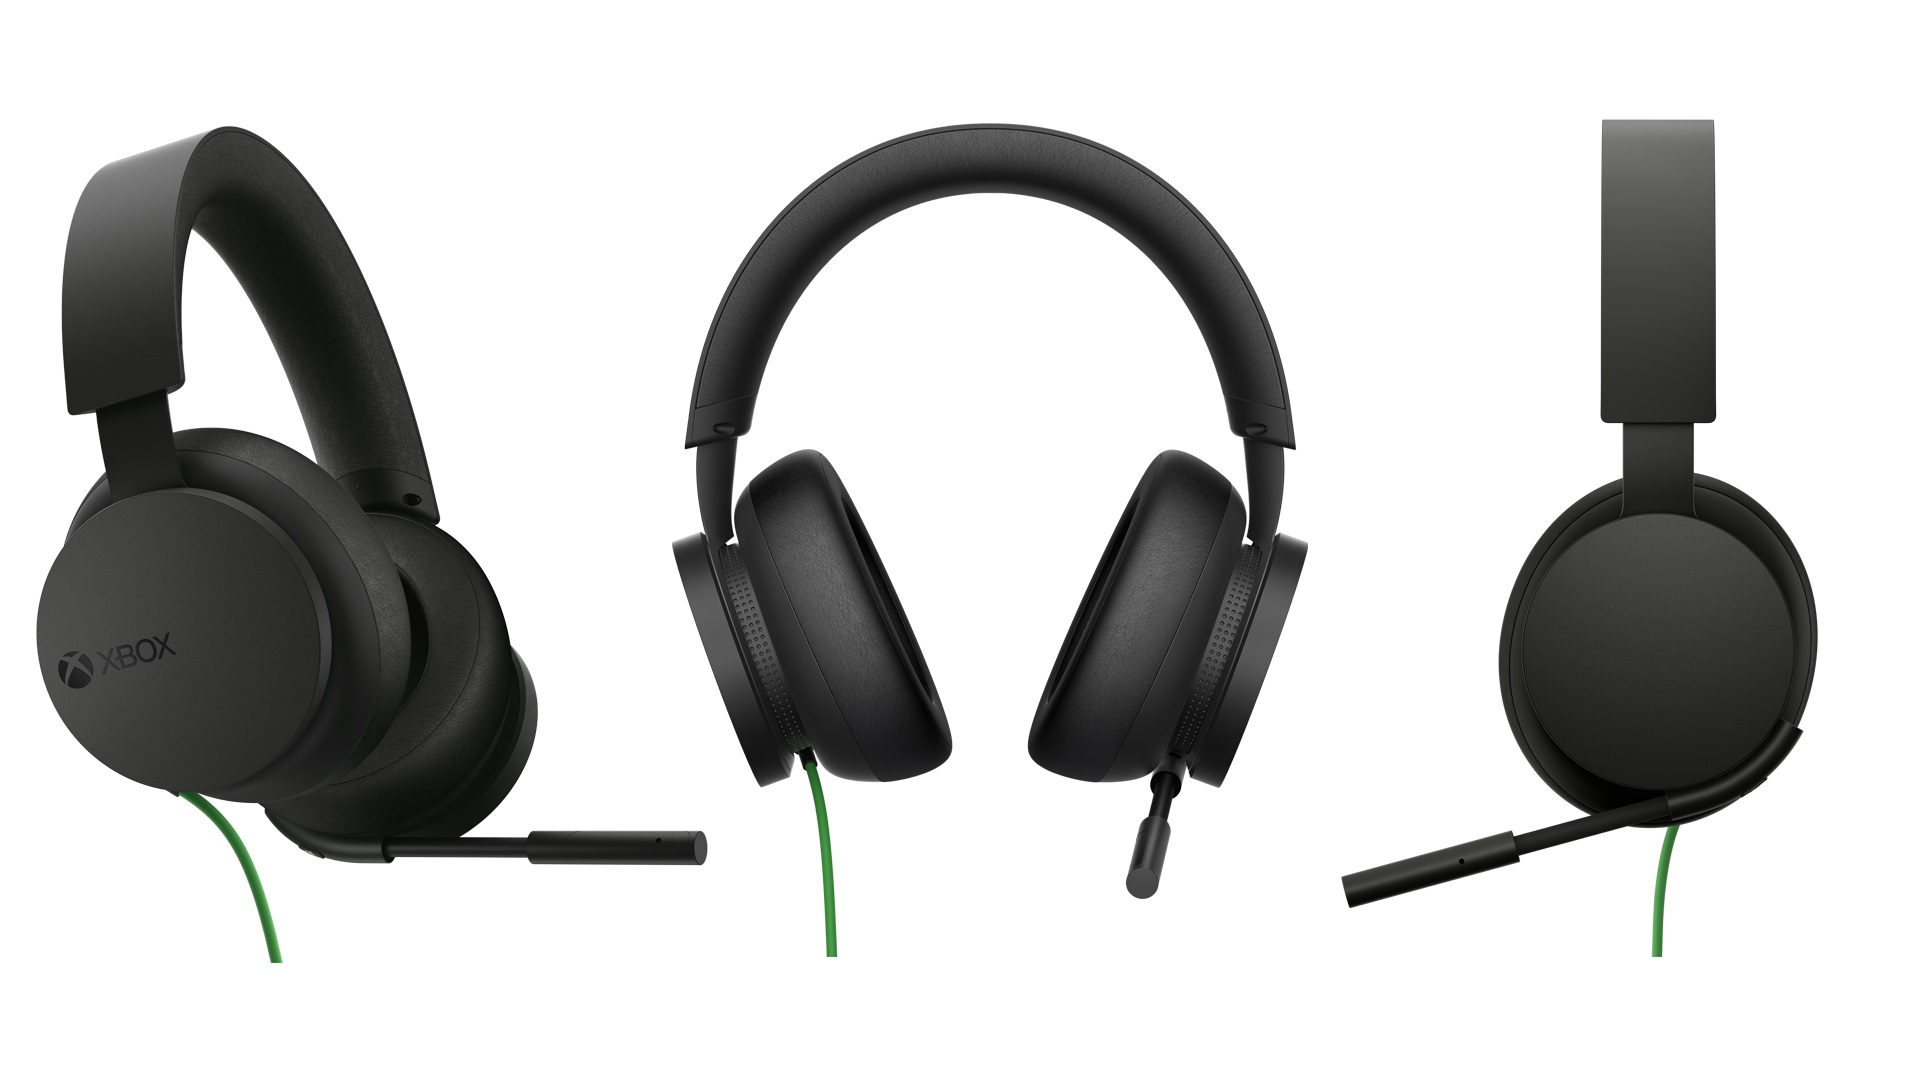 Annunciate le nuove Cuffie stereo per Xbox